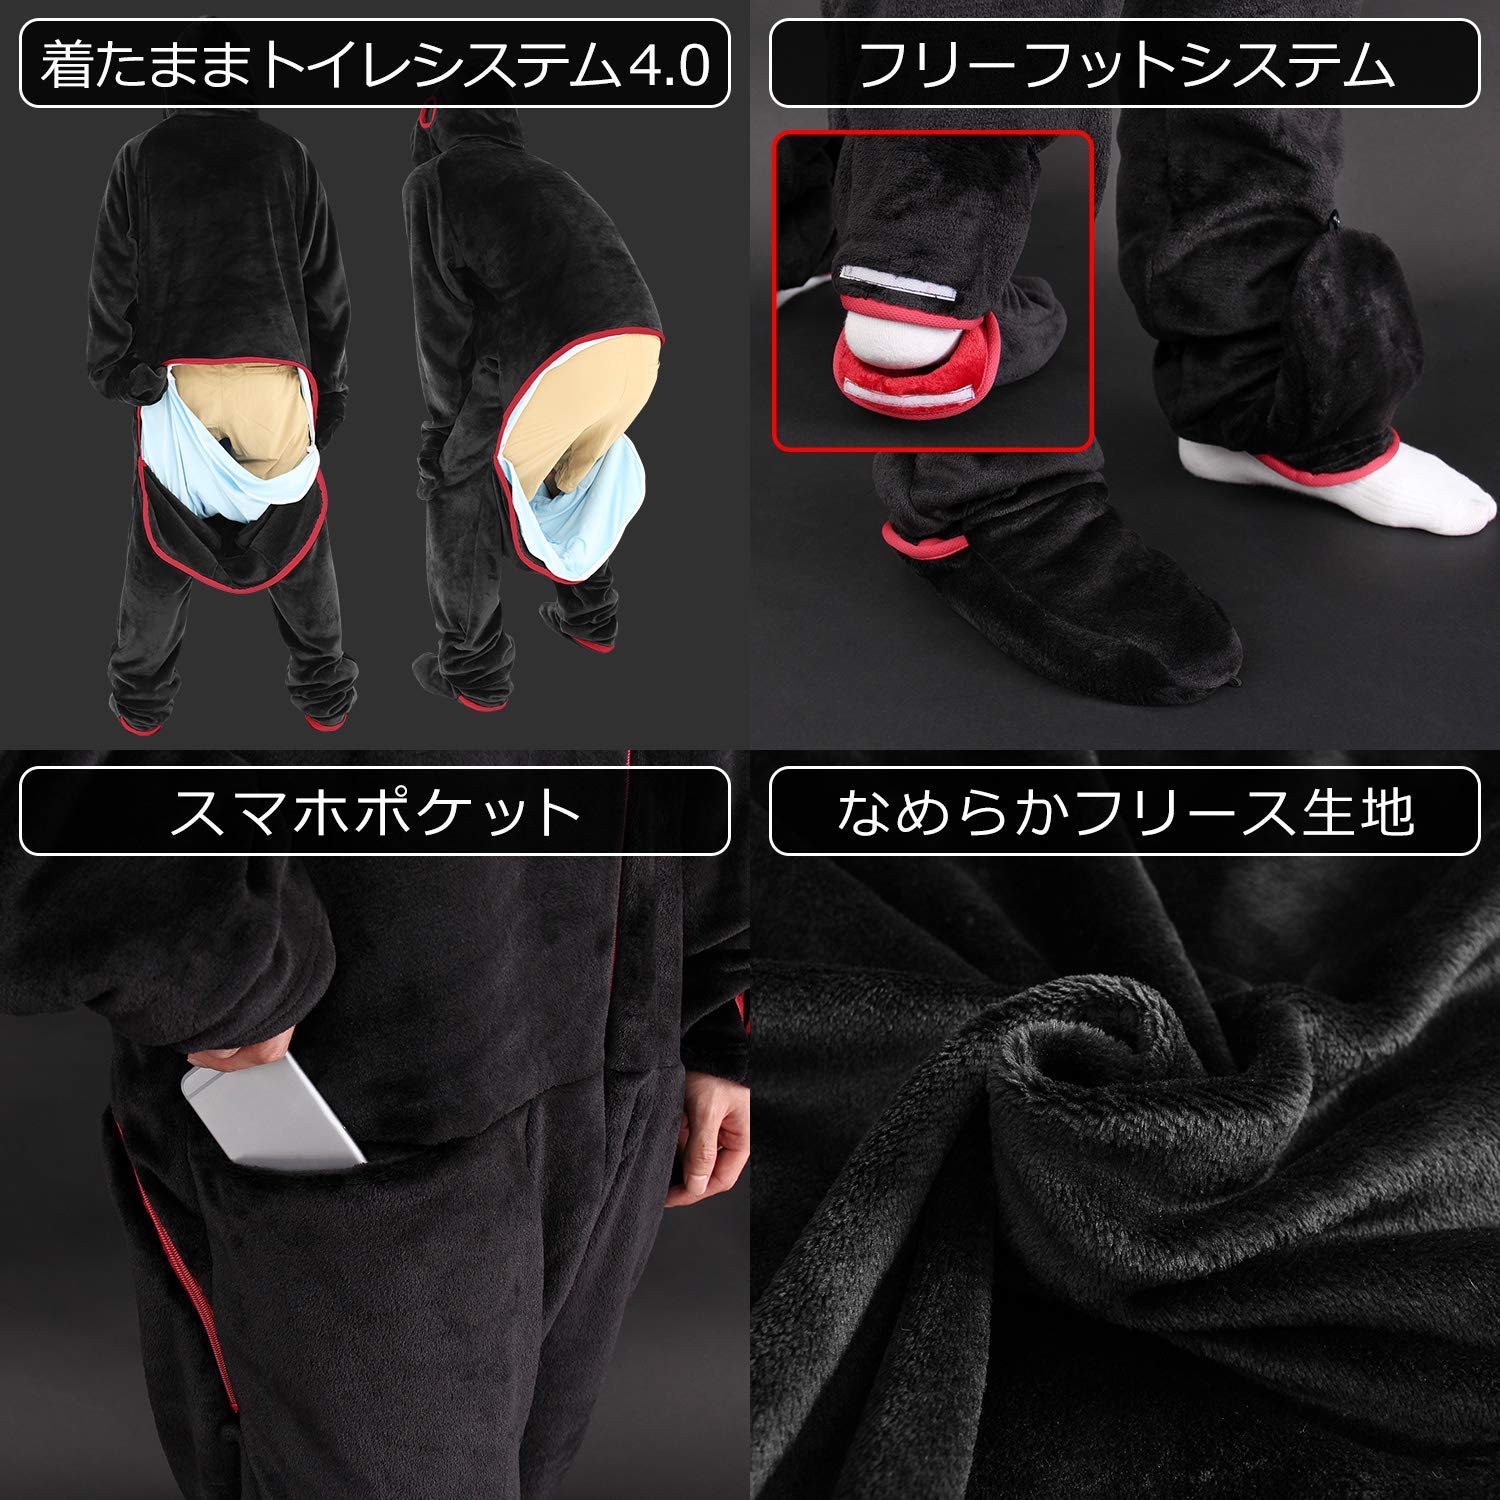 日本推出游戏玩家专用保暖服 肥宅快乐衣穿着真舒坦